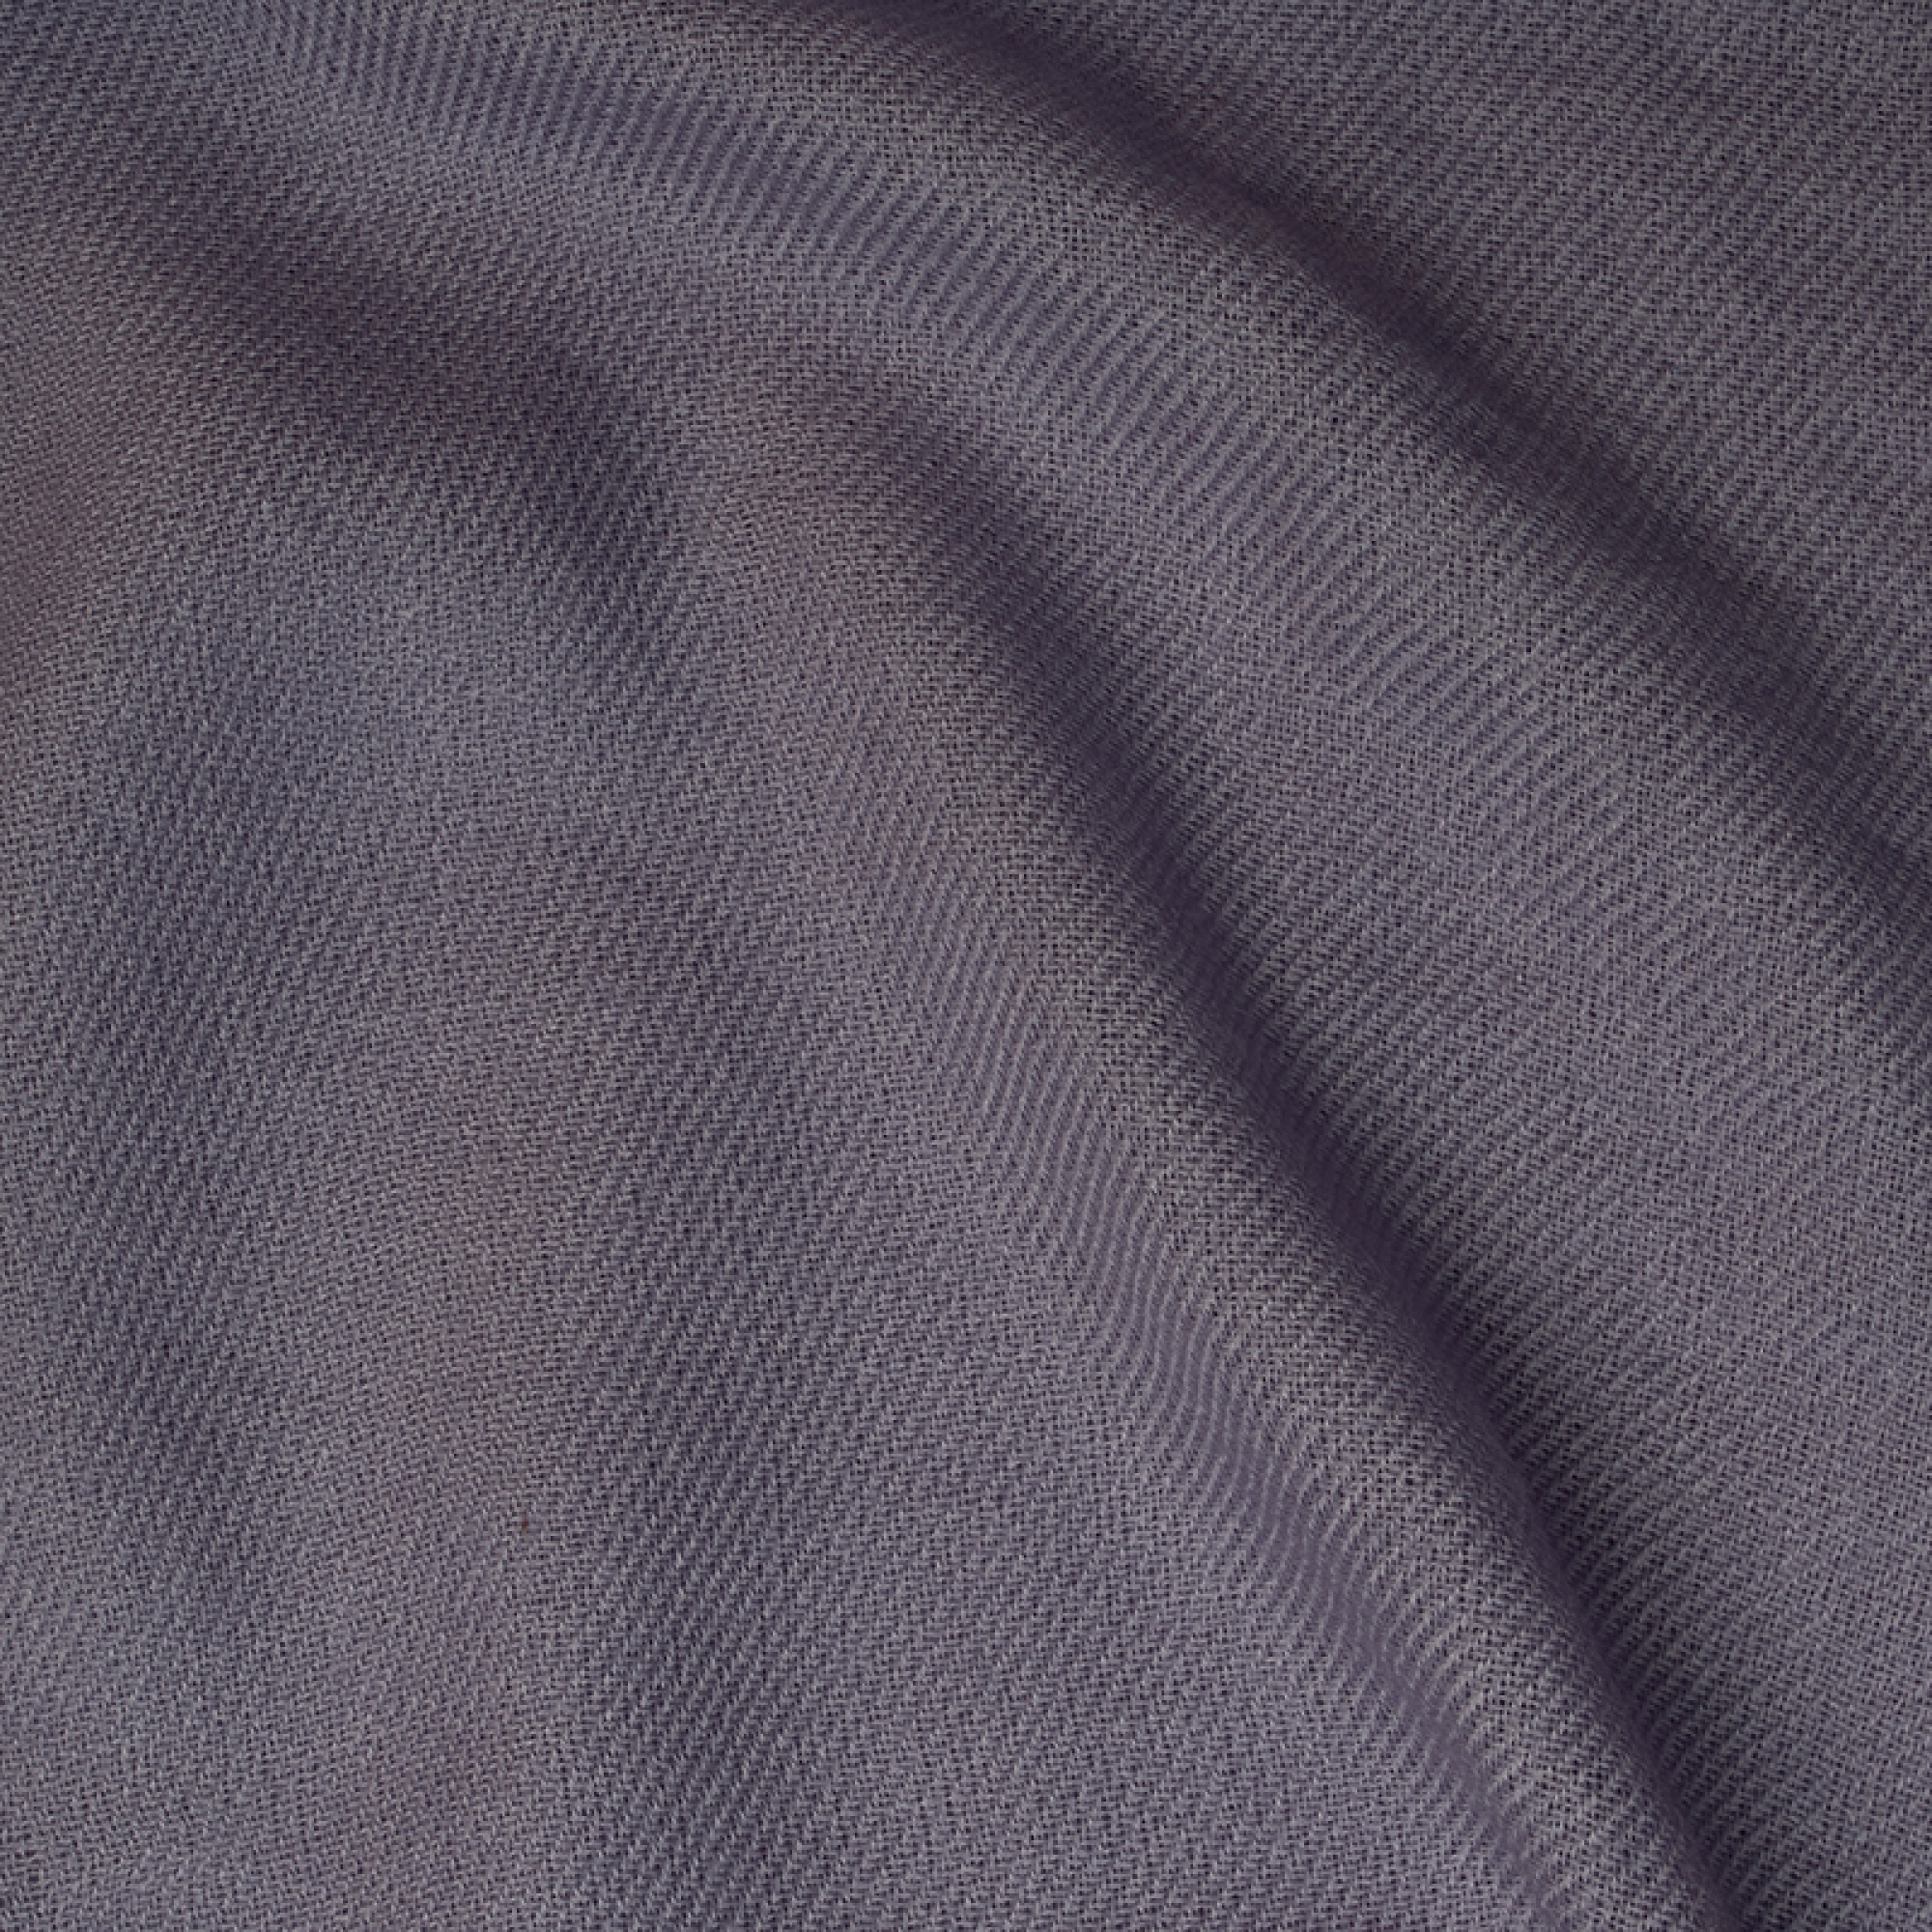 Cashmere accessories toodoo plain l 220 x 220 heirloom lilac 220x220cm